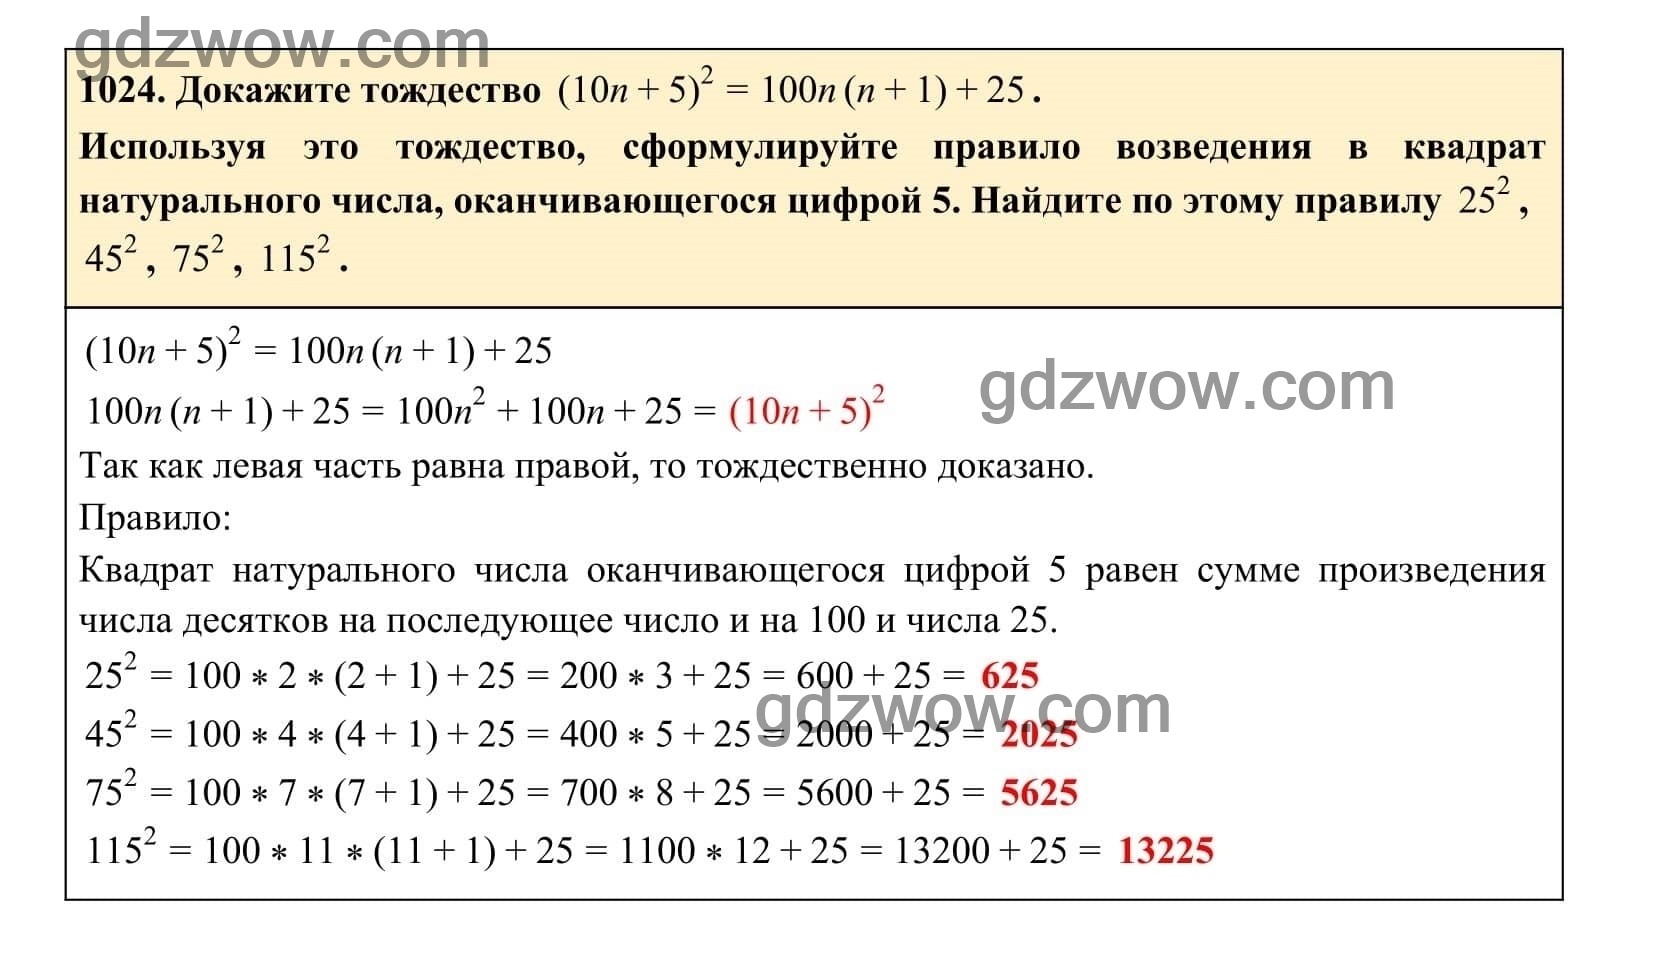 Упражнение 1024 - ГДЗ по Алгебре 7 класс Учебник Макарычев (решебник) - GDZwow